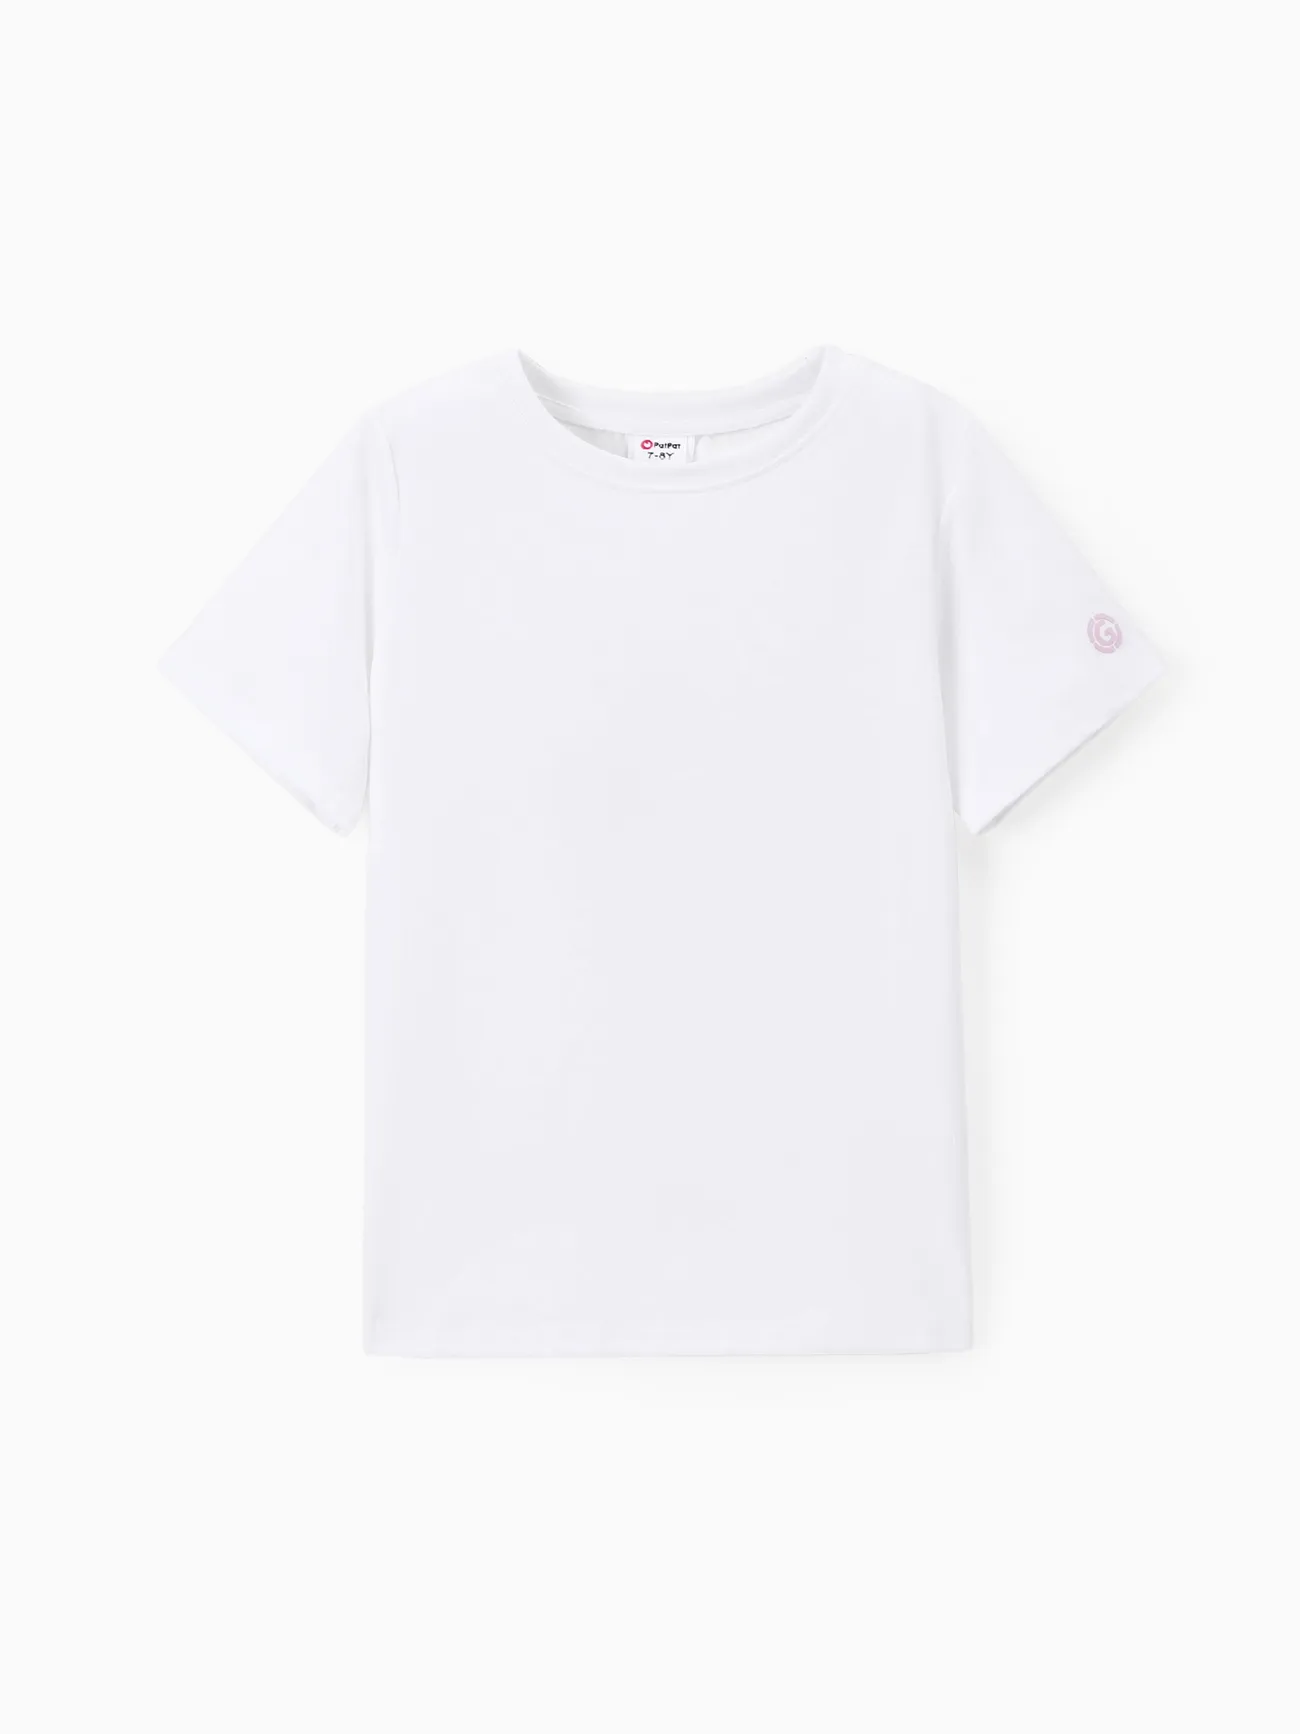 Camisetas Go-Neat repelentes al agua y resistentes a las manchas para niños Blanco big image 1